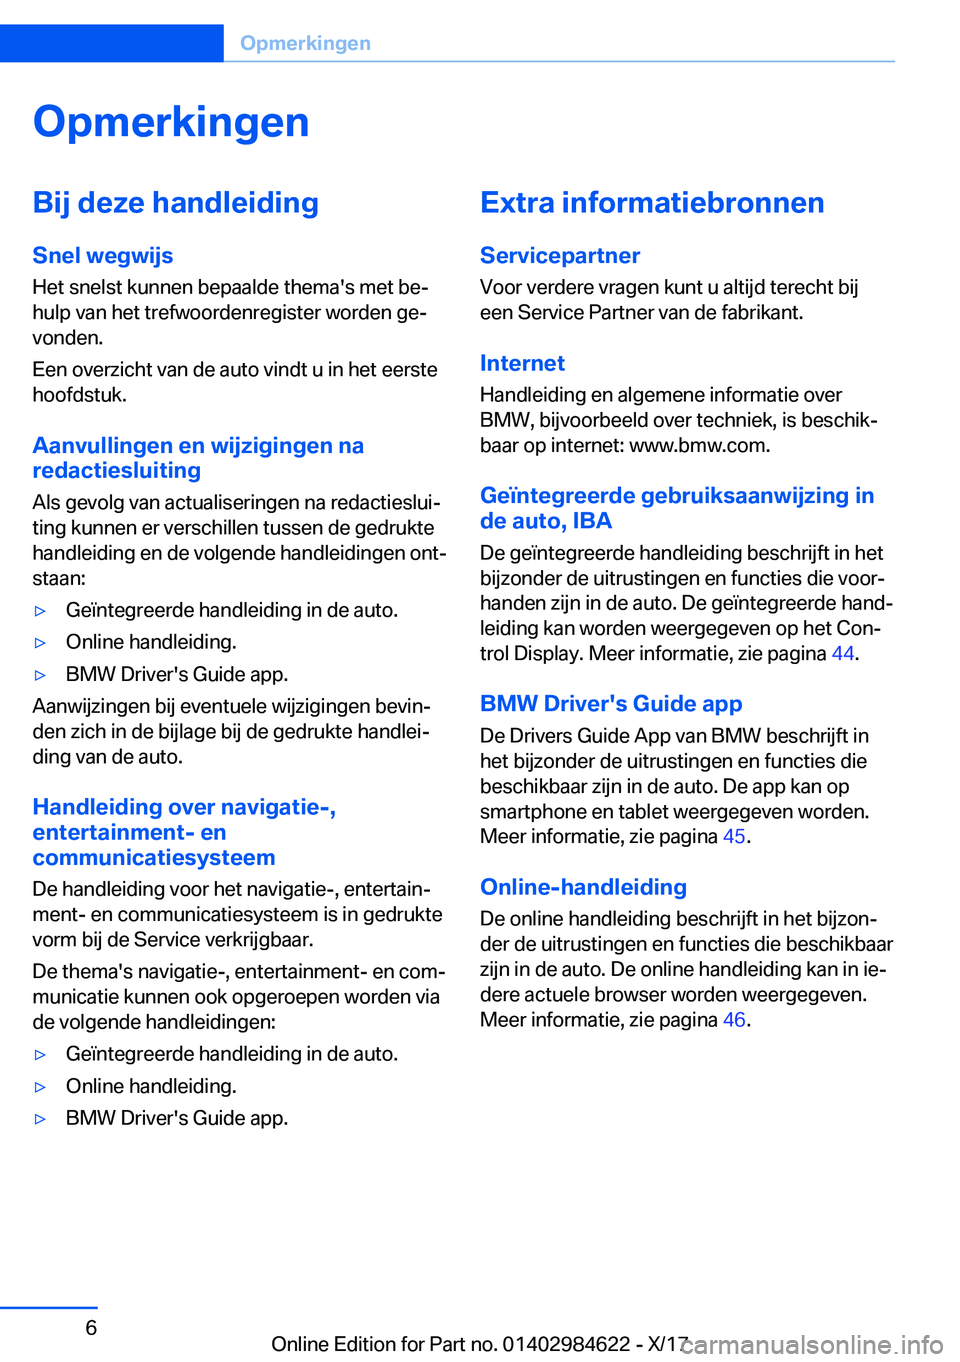 BMW 4 SERIES GRAN COUPE 2018  Instructieboekjes (in Dutch) �O�p�m�e�r�k�i�n�g�e�n�B�i�j��d�e�z�e��h�a�n�d�l�e�i�d�i�n�g�S�n�e�l��w�e�g�w�i�j�s
�H�e�t� �s�n�e�l�s�t� �k�u�n�n�e�n� �b�e�p�a�a�l�d�e� �t�h�e�m�a�'�s� �m�e�t� �b�ej
�h�u�l�p� �v�a�n� �h�e�t